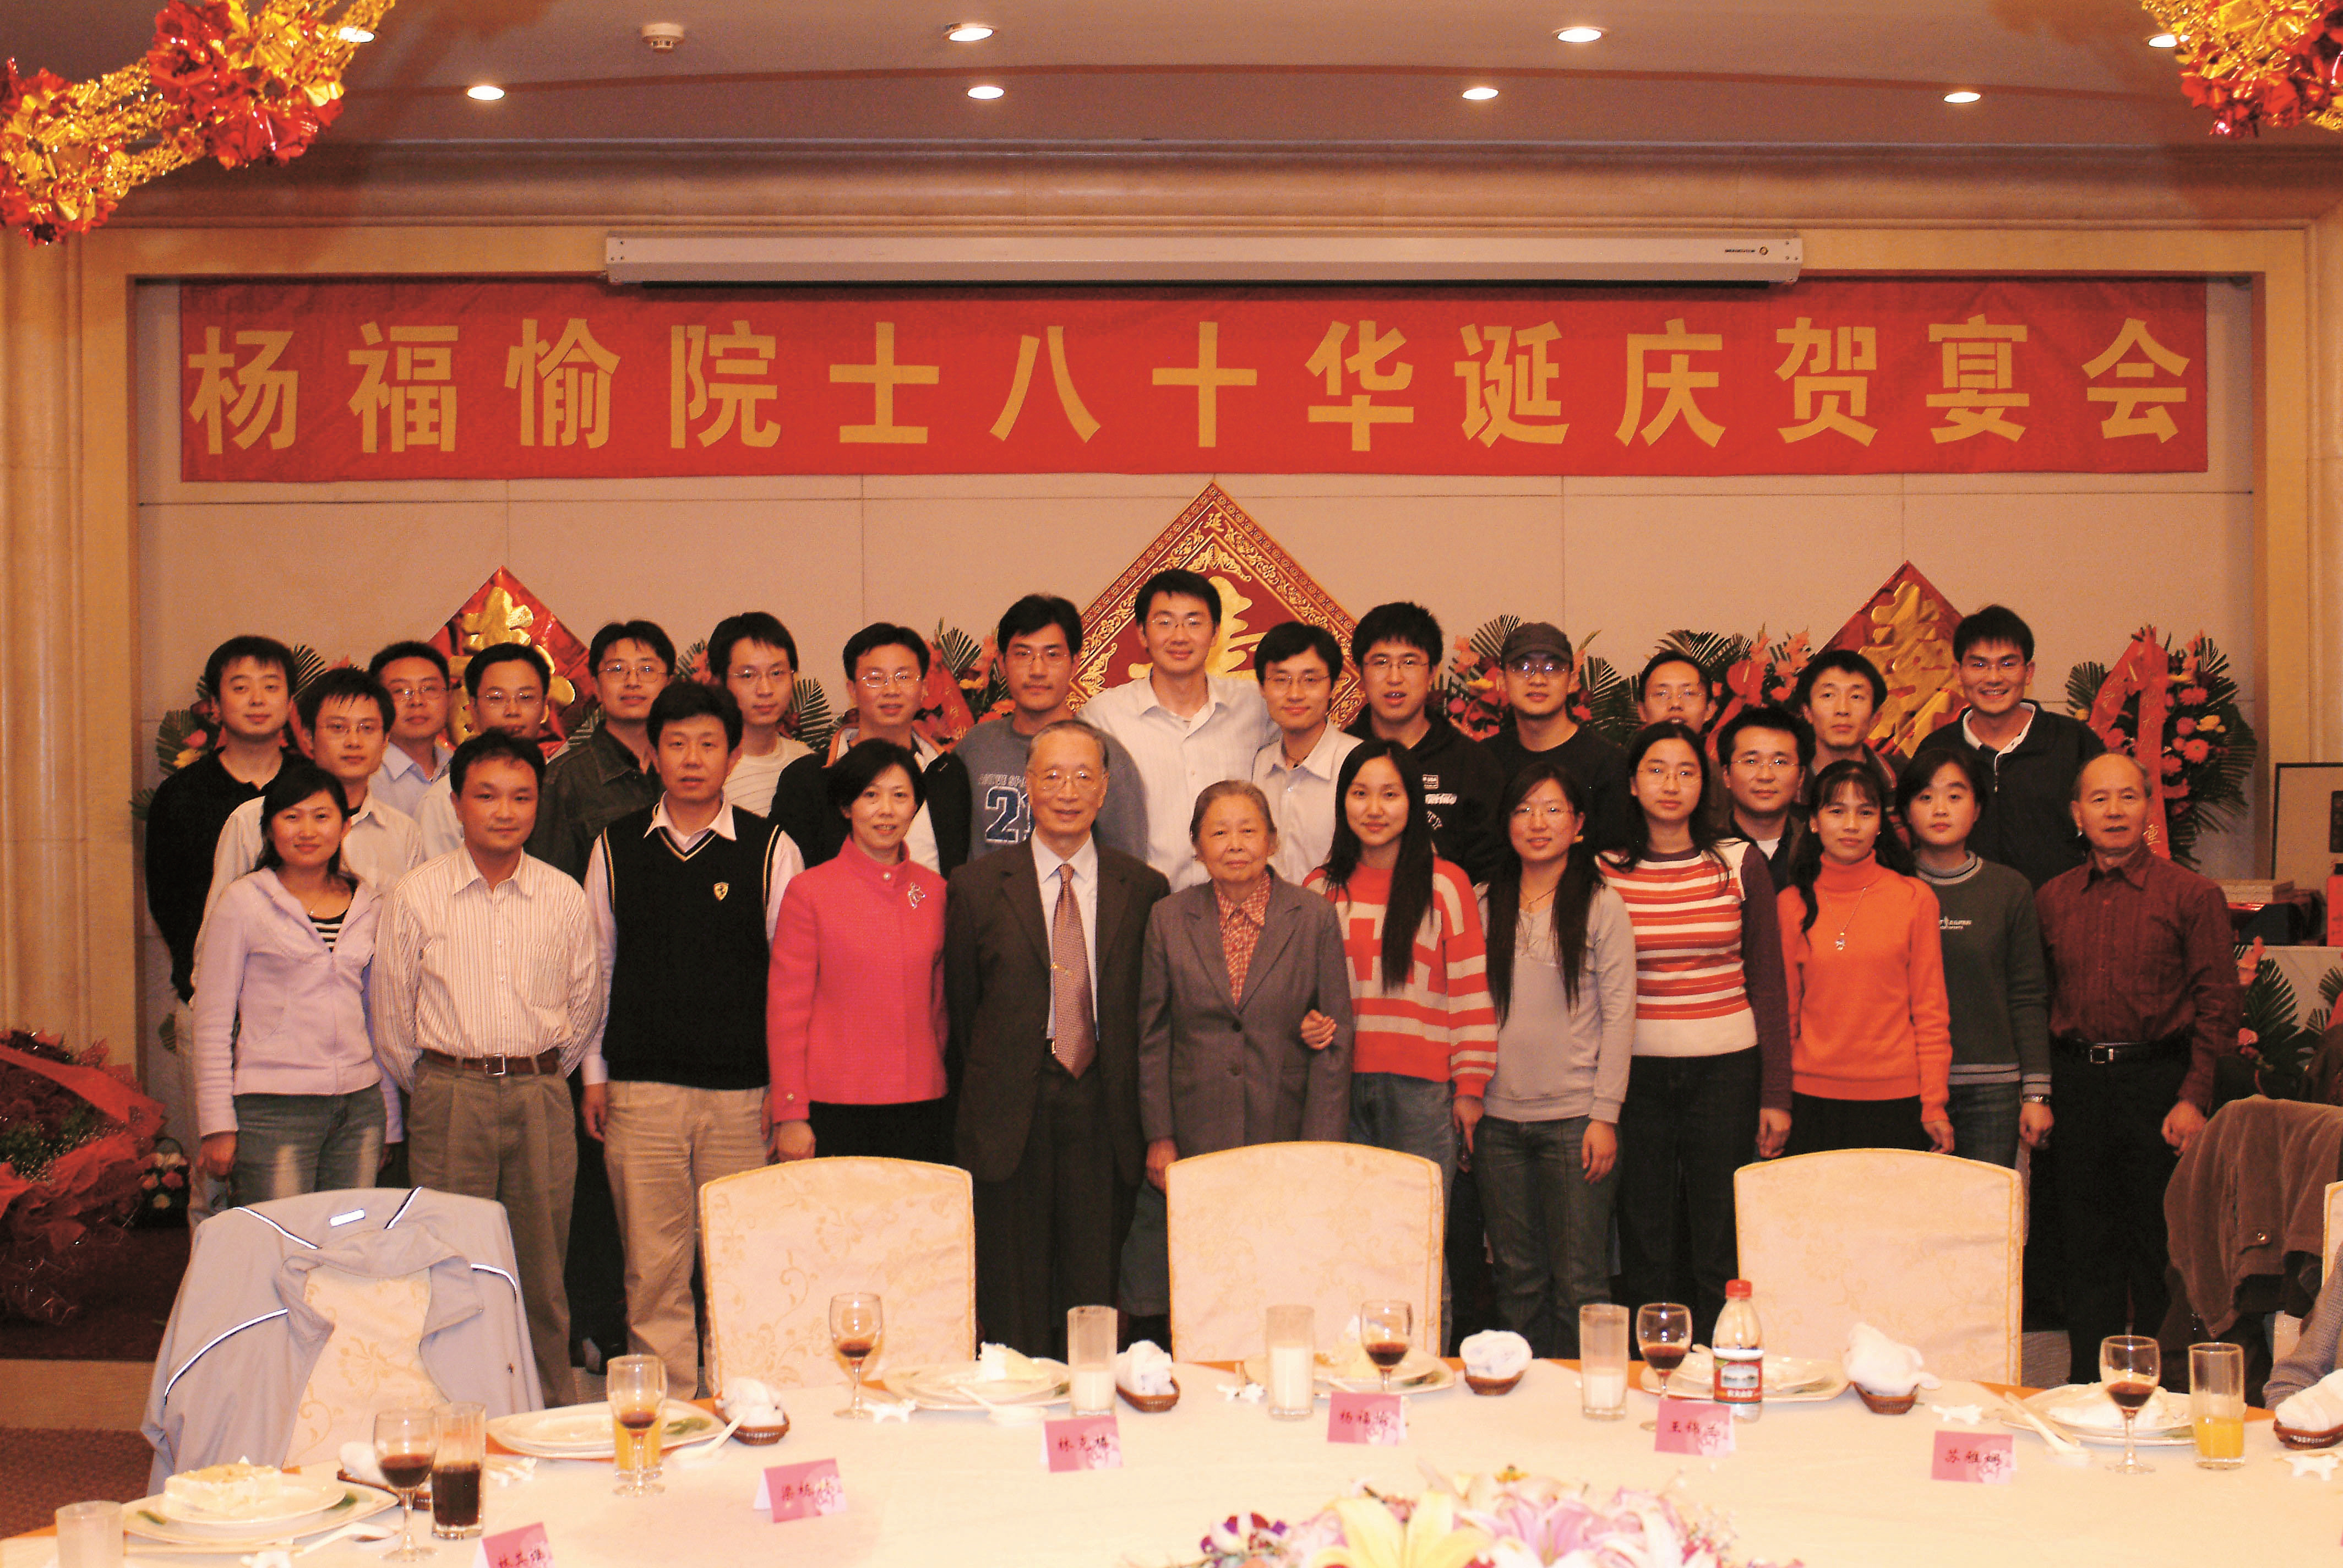 2006年10月在八十华诞宴会上和黄有国(前右1)张旭家、钟文敏、卫涛涛(前左3、4、2)等与生物膜组全体研究生合影